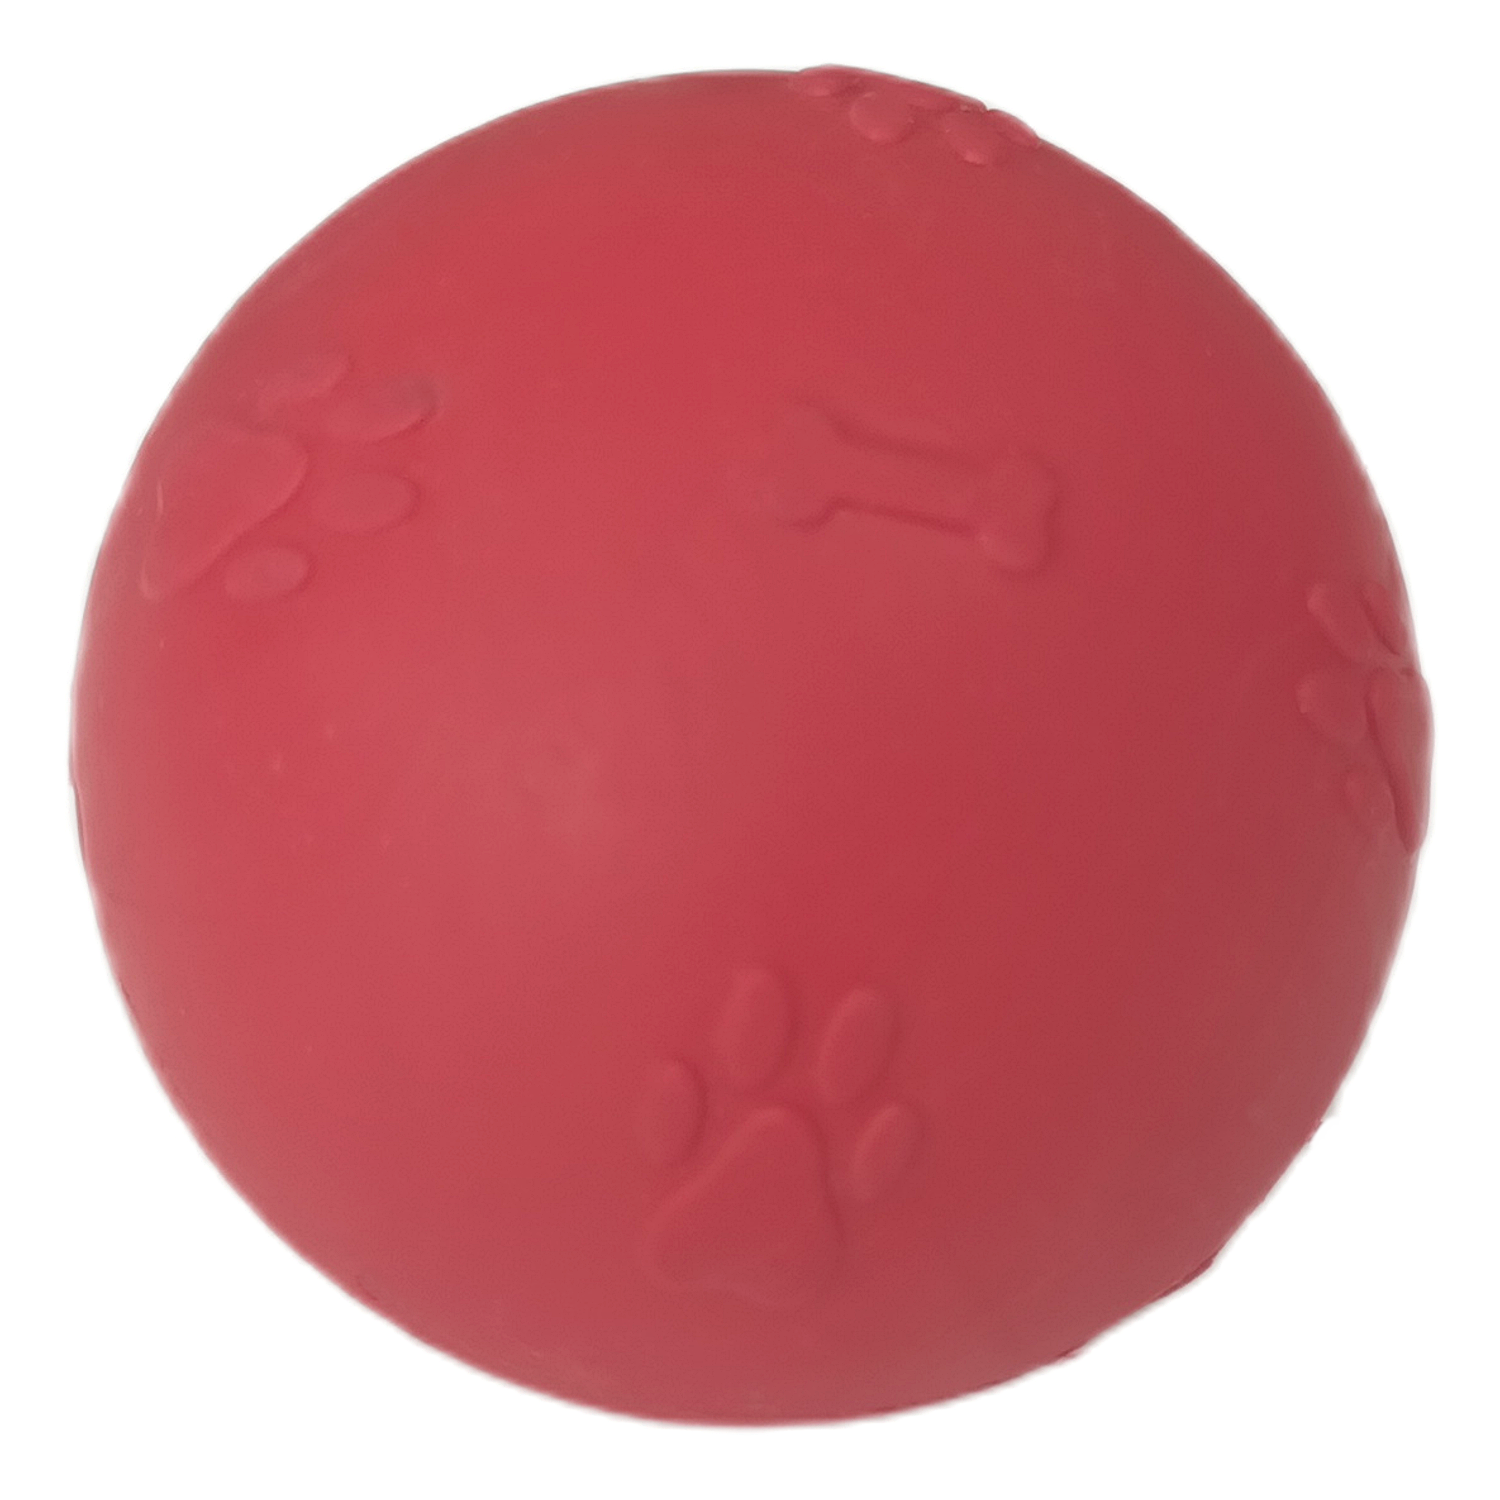 CLZ205 Pati Desenli Sert Köpek Oyun Topu 8 cm Large Kırmızı